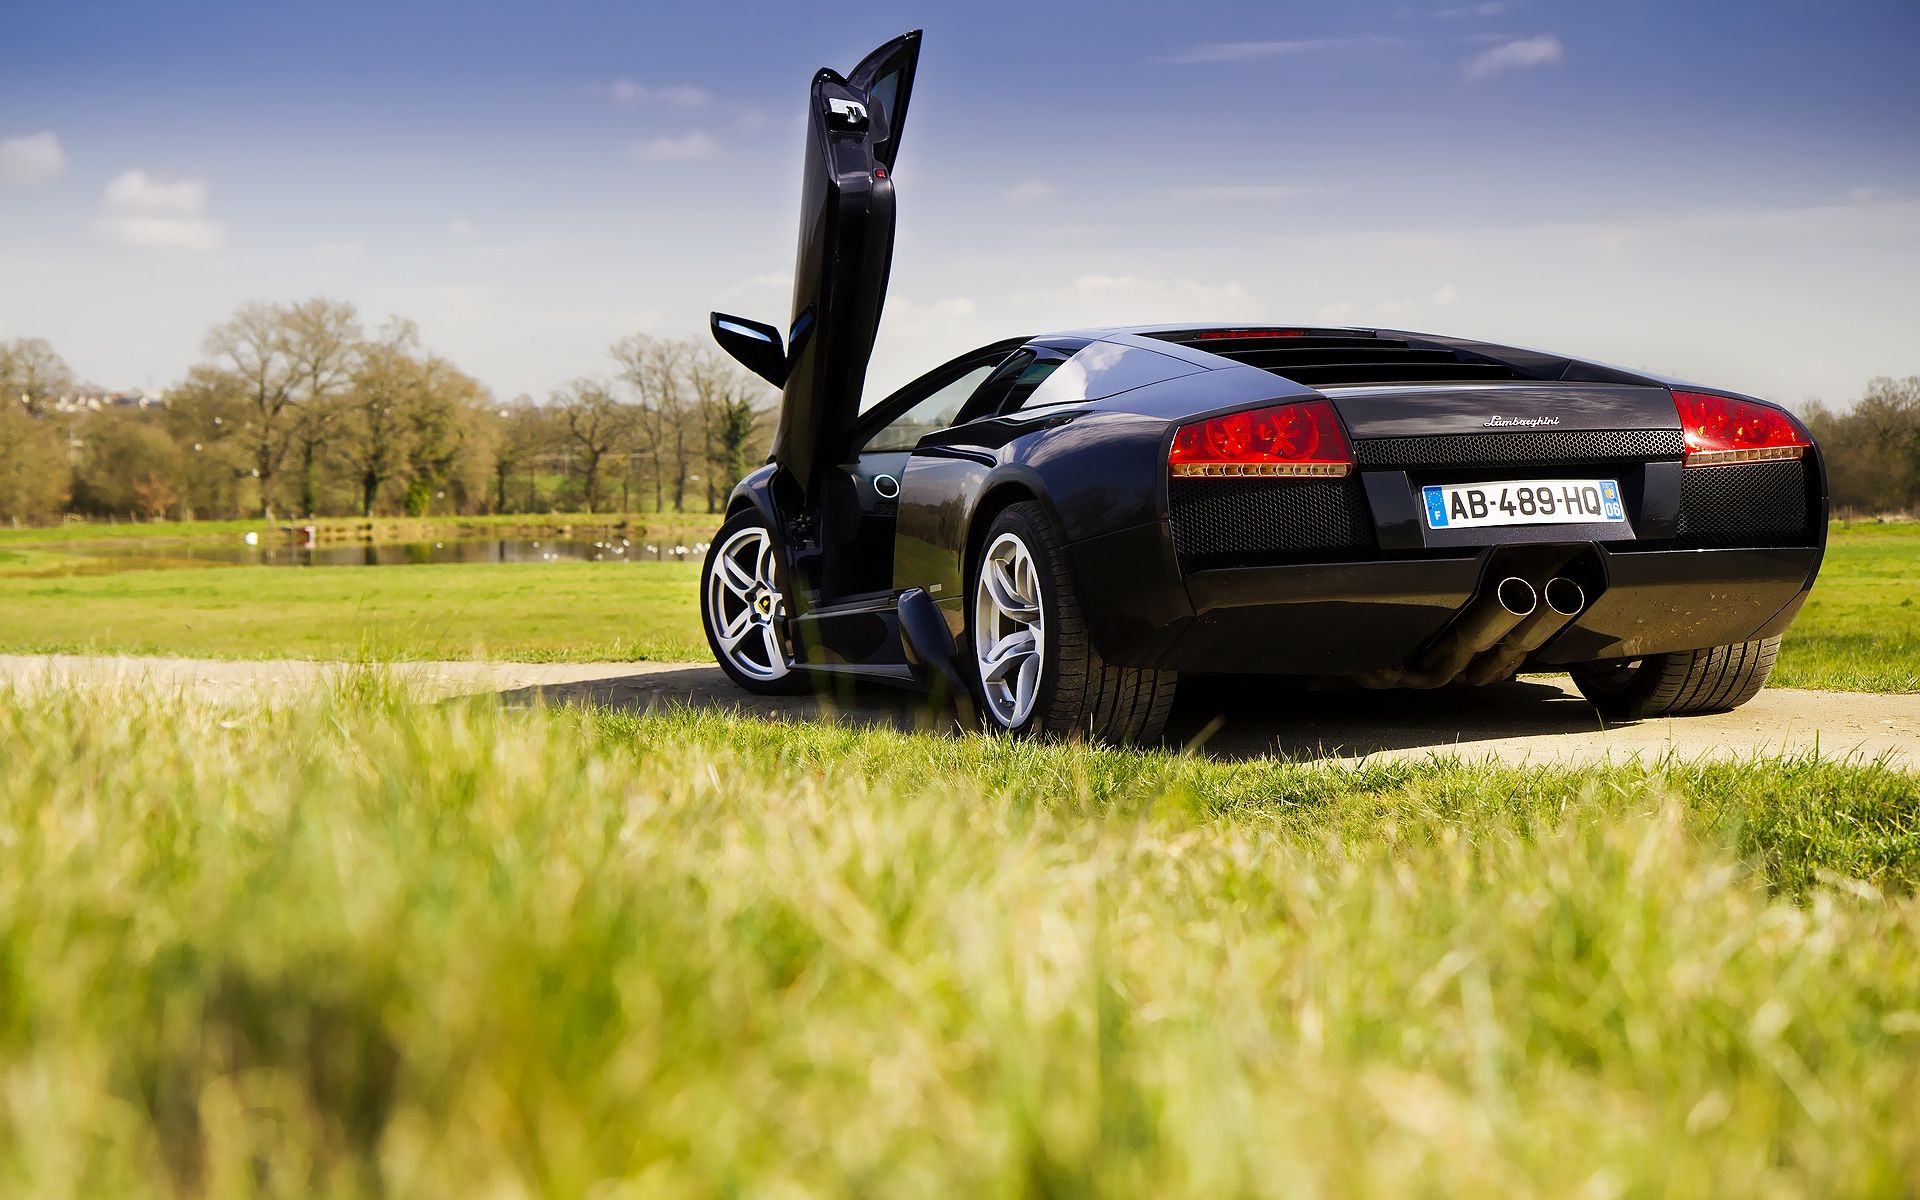 Charming Black Lamborghini Car HD Lock Screen Wallpaper Windows 8